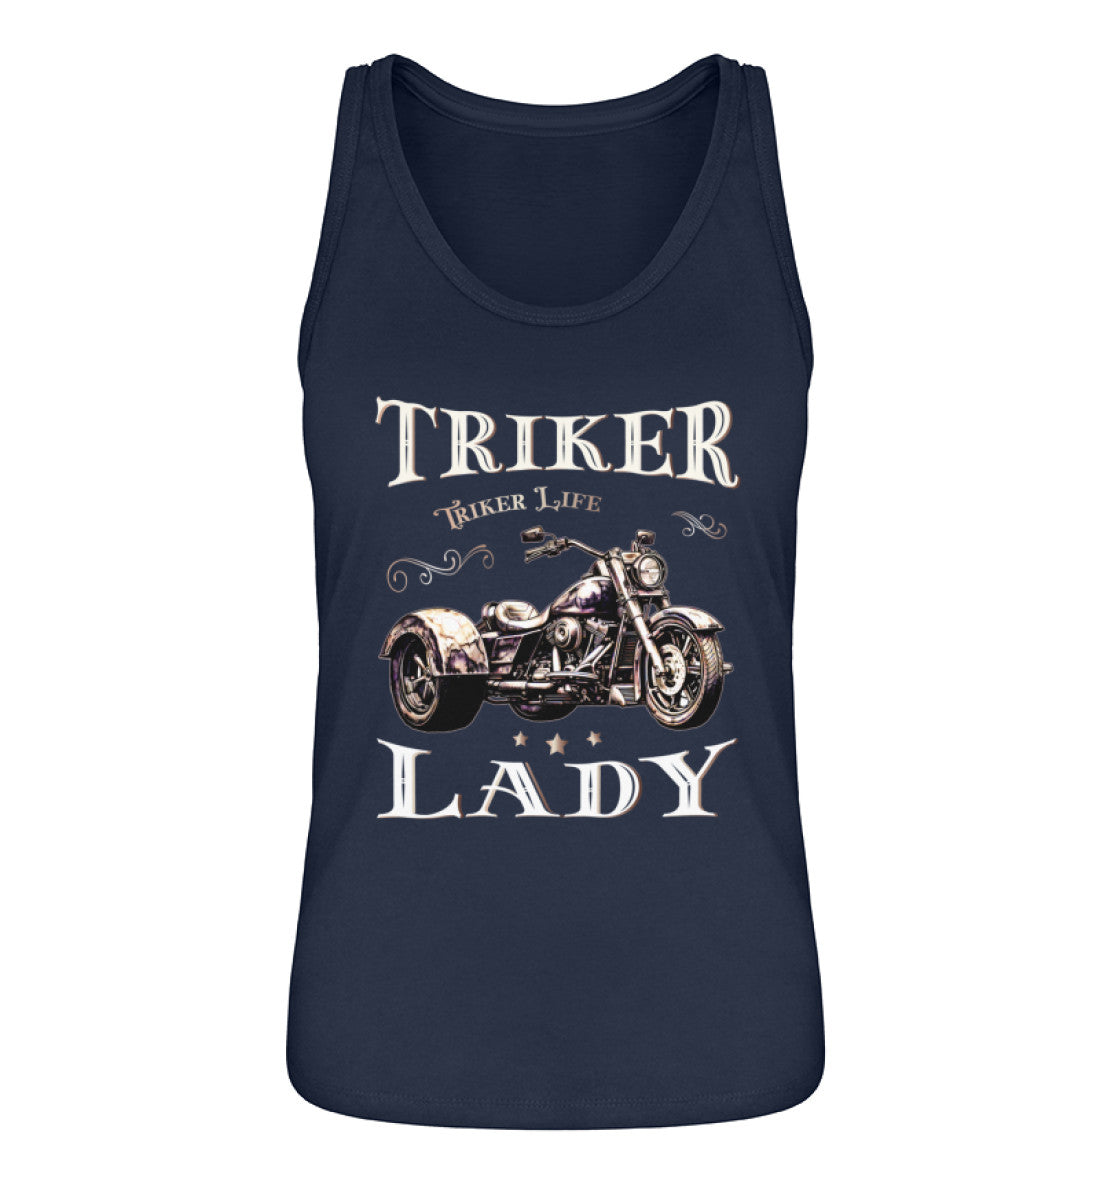 Ein Tanktop für Trike Fahrerinnen von Wingbikers mit dem Aufdruck, Triker Lady - Triker Life, im vintage Stil, in navy blau.